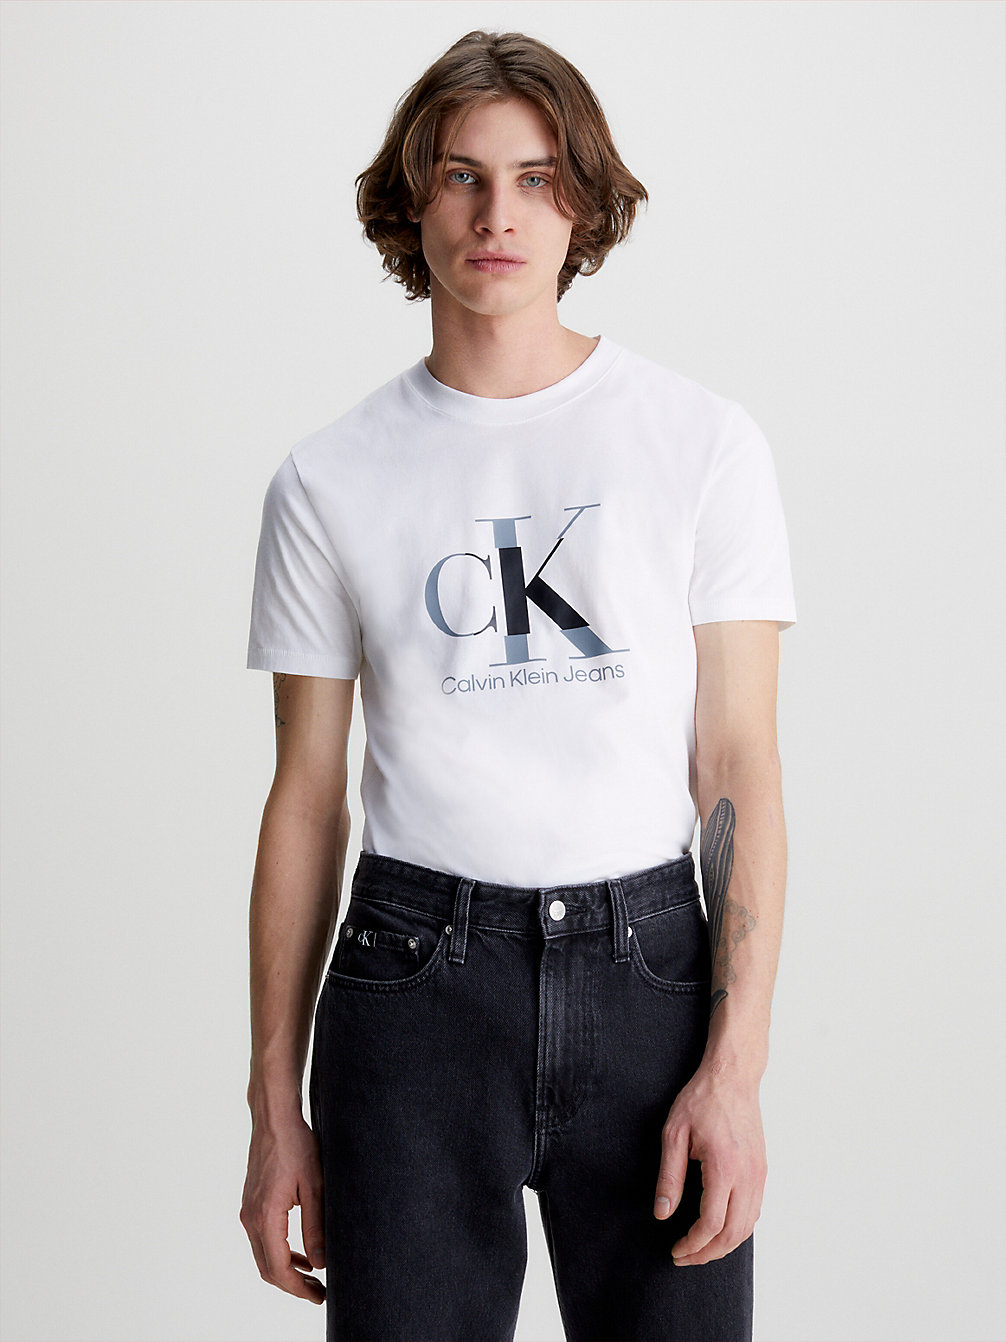 BRIGHT WHITE Schmales Monogramm-T-Shirt undefined Herren Calvin Klein